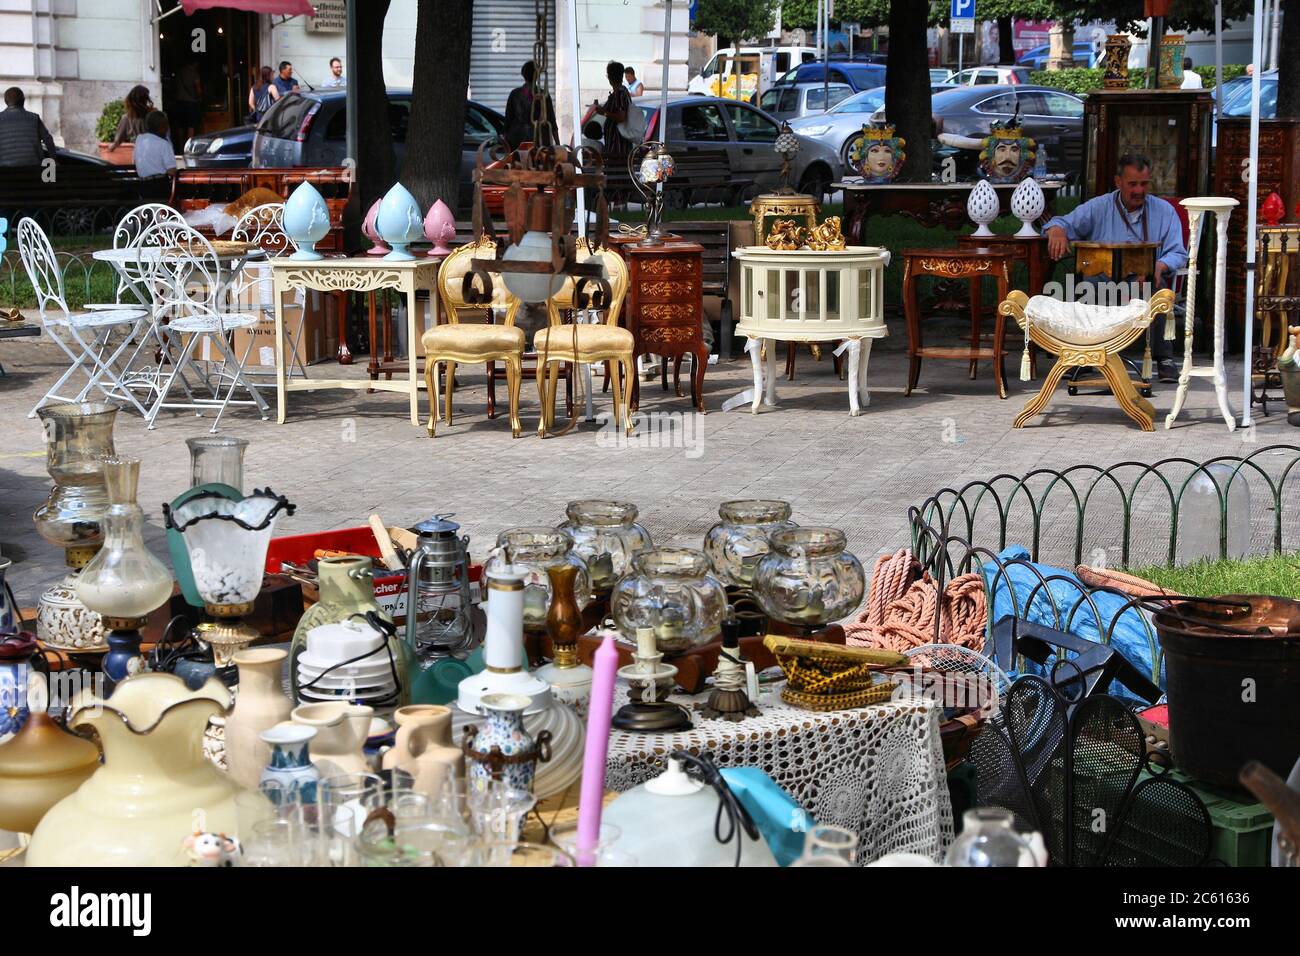 ALTAMURA, ITALIE - 4 JUIN 2017 : visite du marché aux puces d'Altamura, Italie. Variété de meubles de trinket et anciens. Banque D'Images